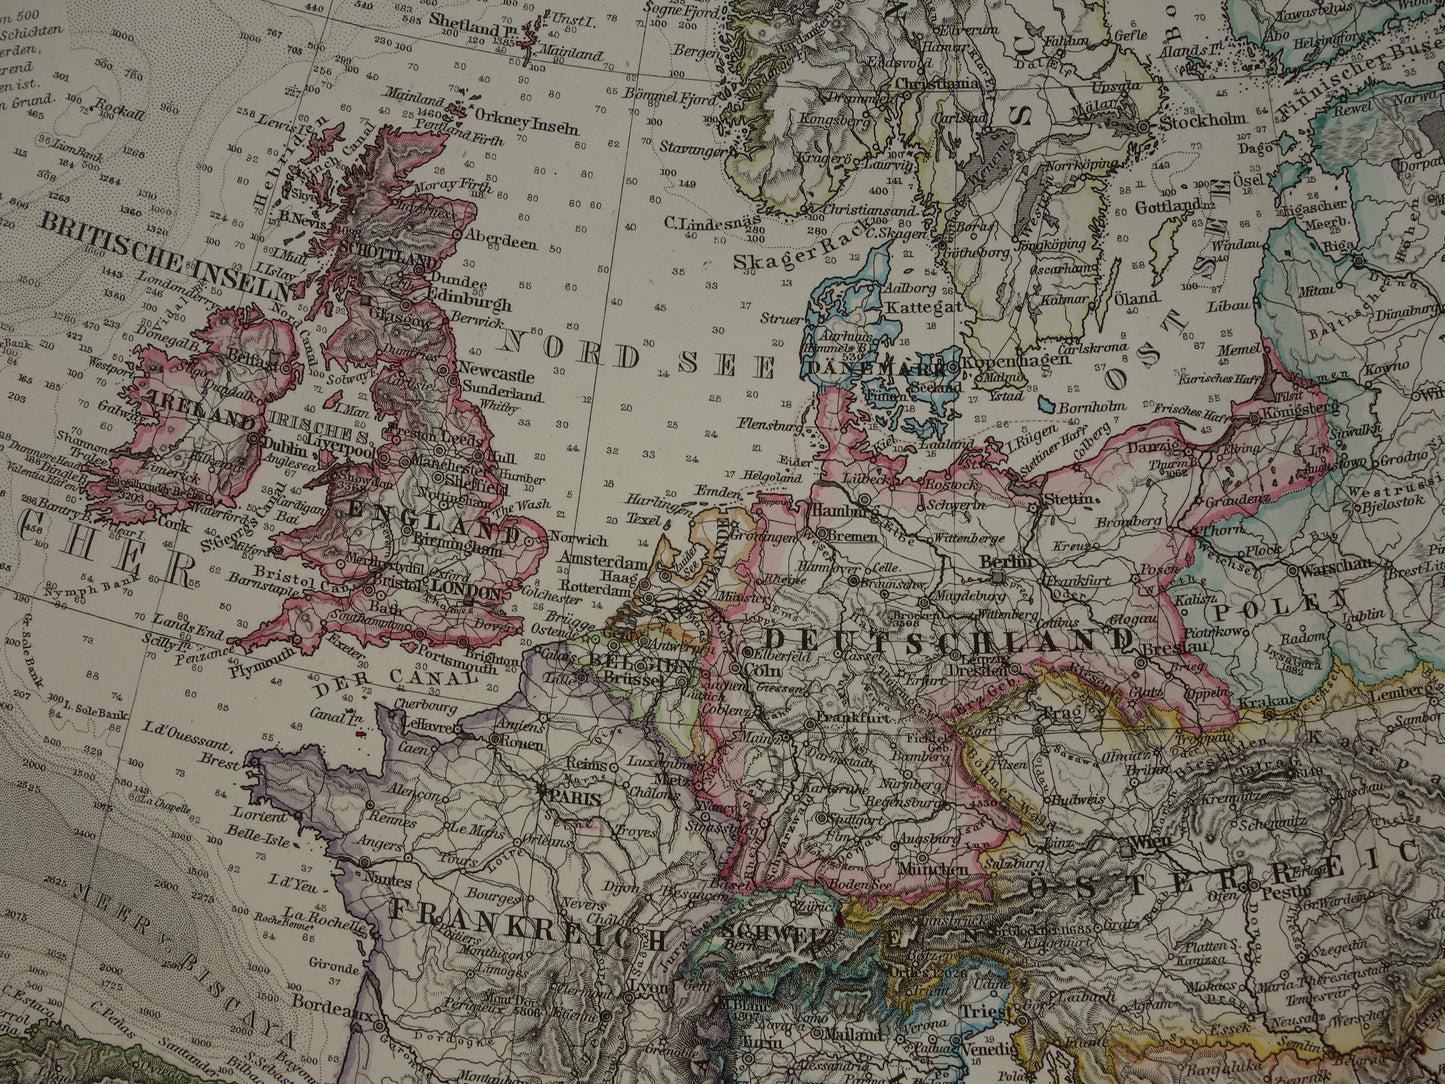 EUROPA oude landkaart van Europa uit 1878 originele antieke Duitse kaart van continent Europa